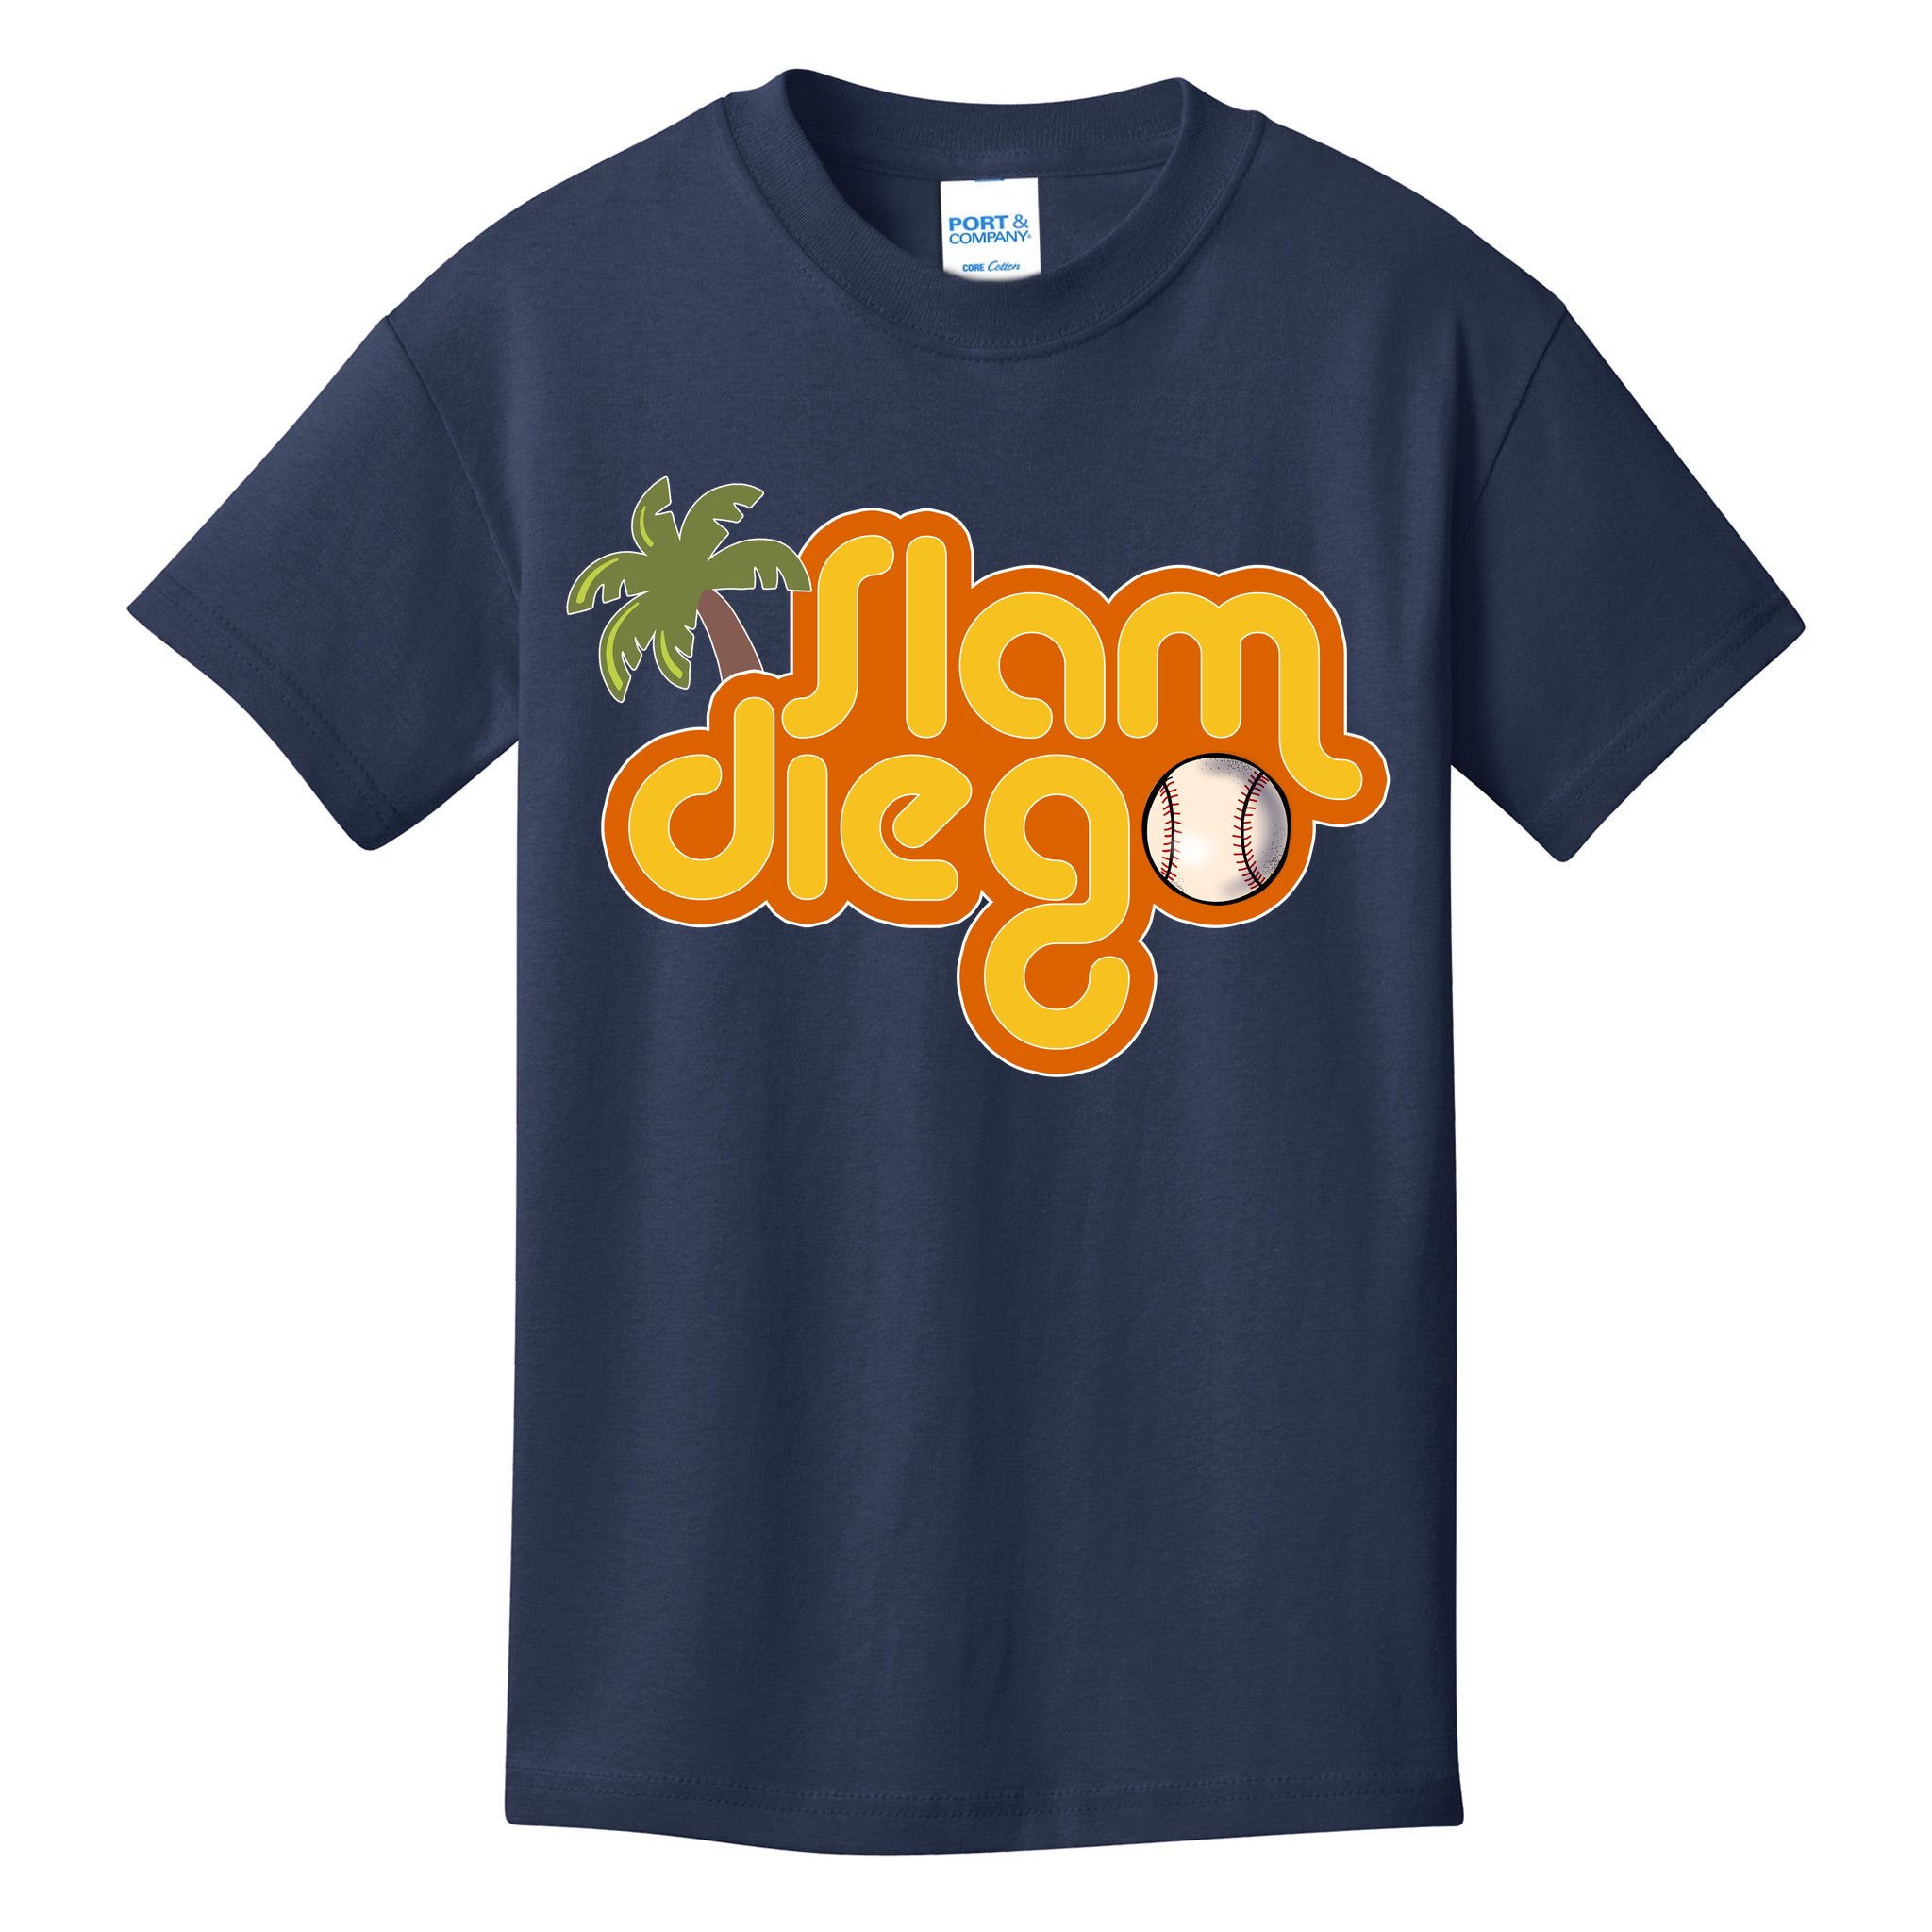 Slam San Diego Padres Hoodie, Custom prints store